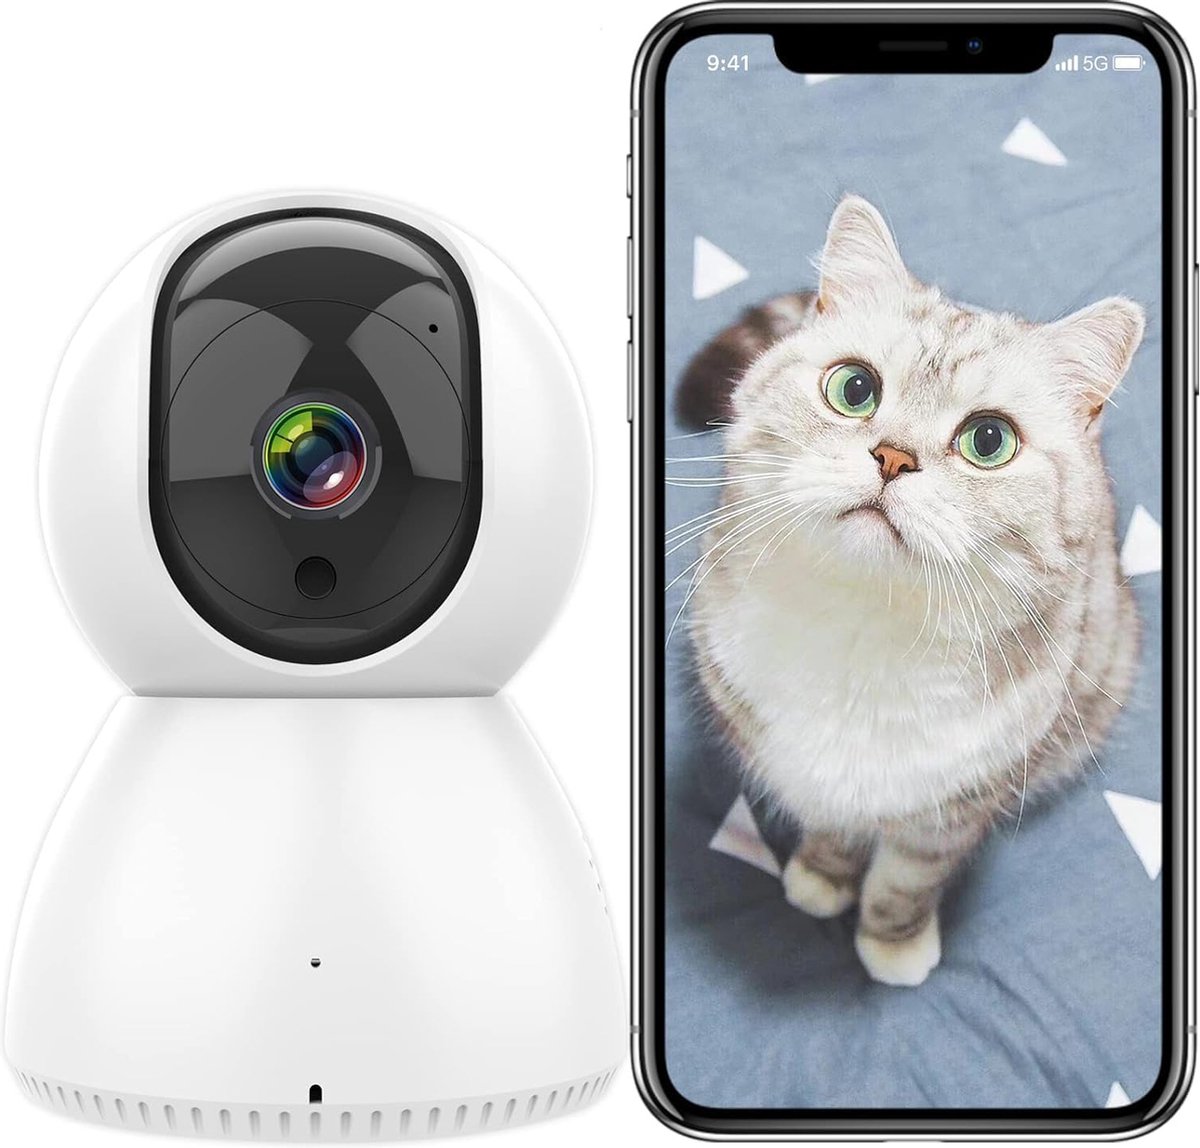 Wifi Camera Bewakingscamera - Nachtzicht, Bewegingsdetectie - Huisdier Camera voor Realtime Monitoring en Veiligheid thuis